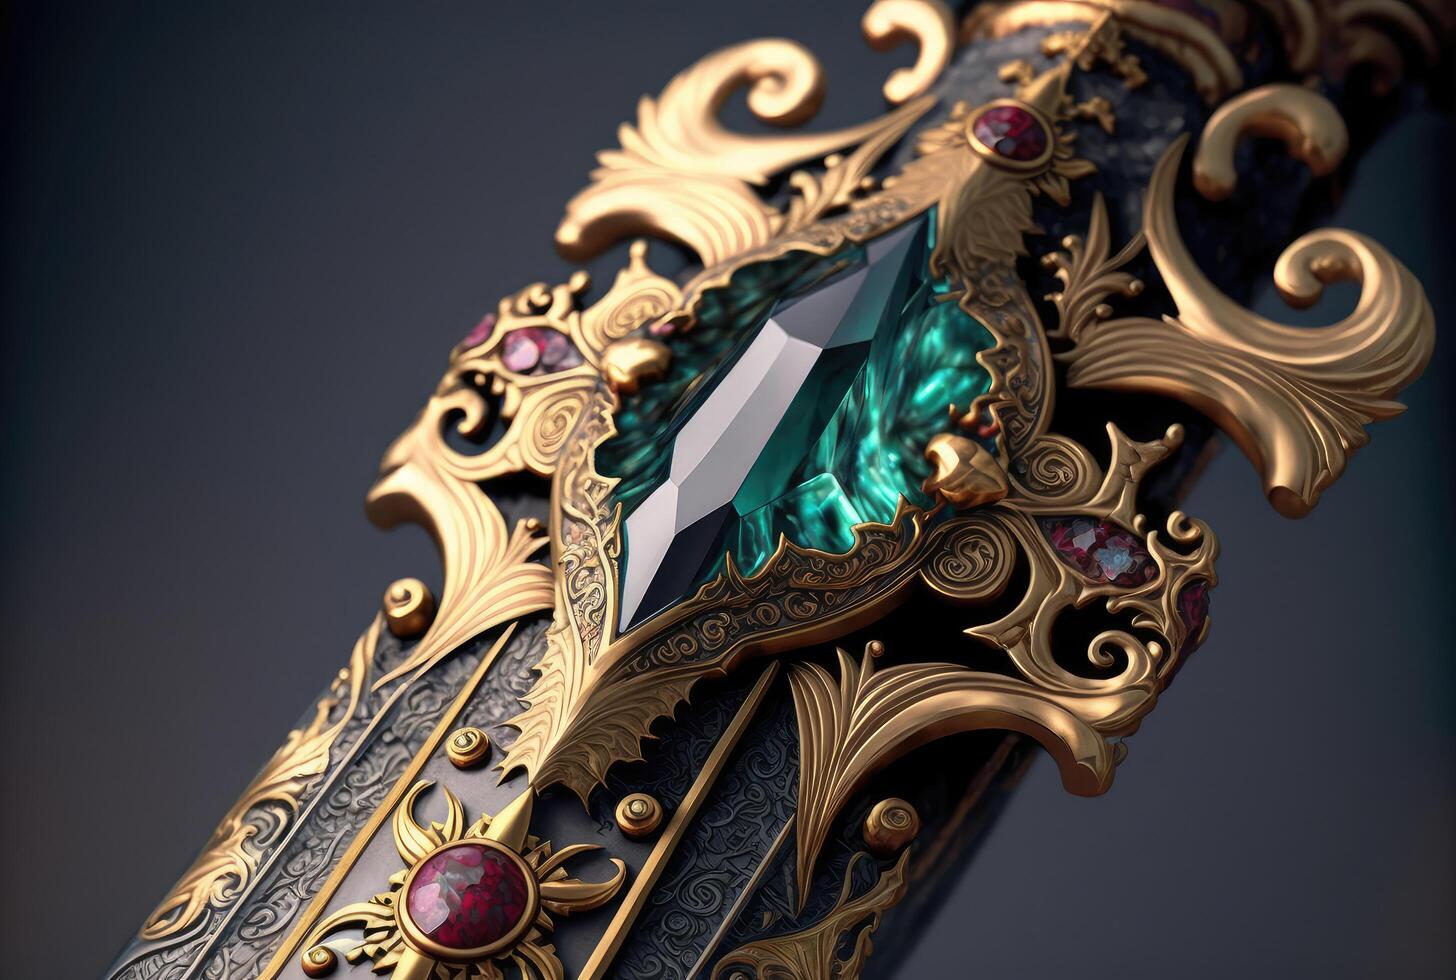 Sword hilt with gems closeup. photo